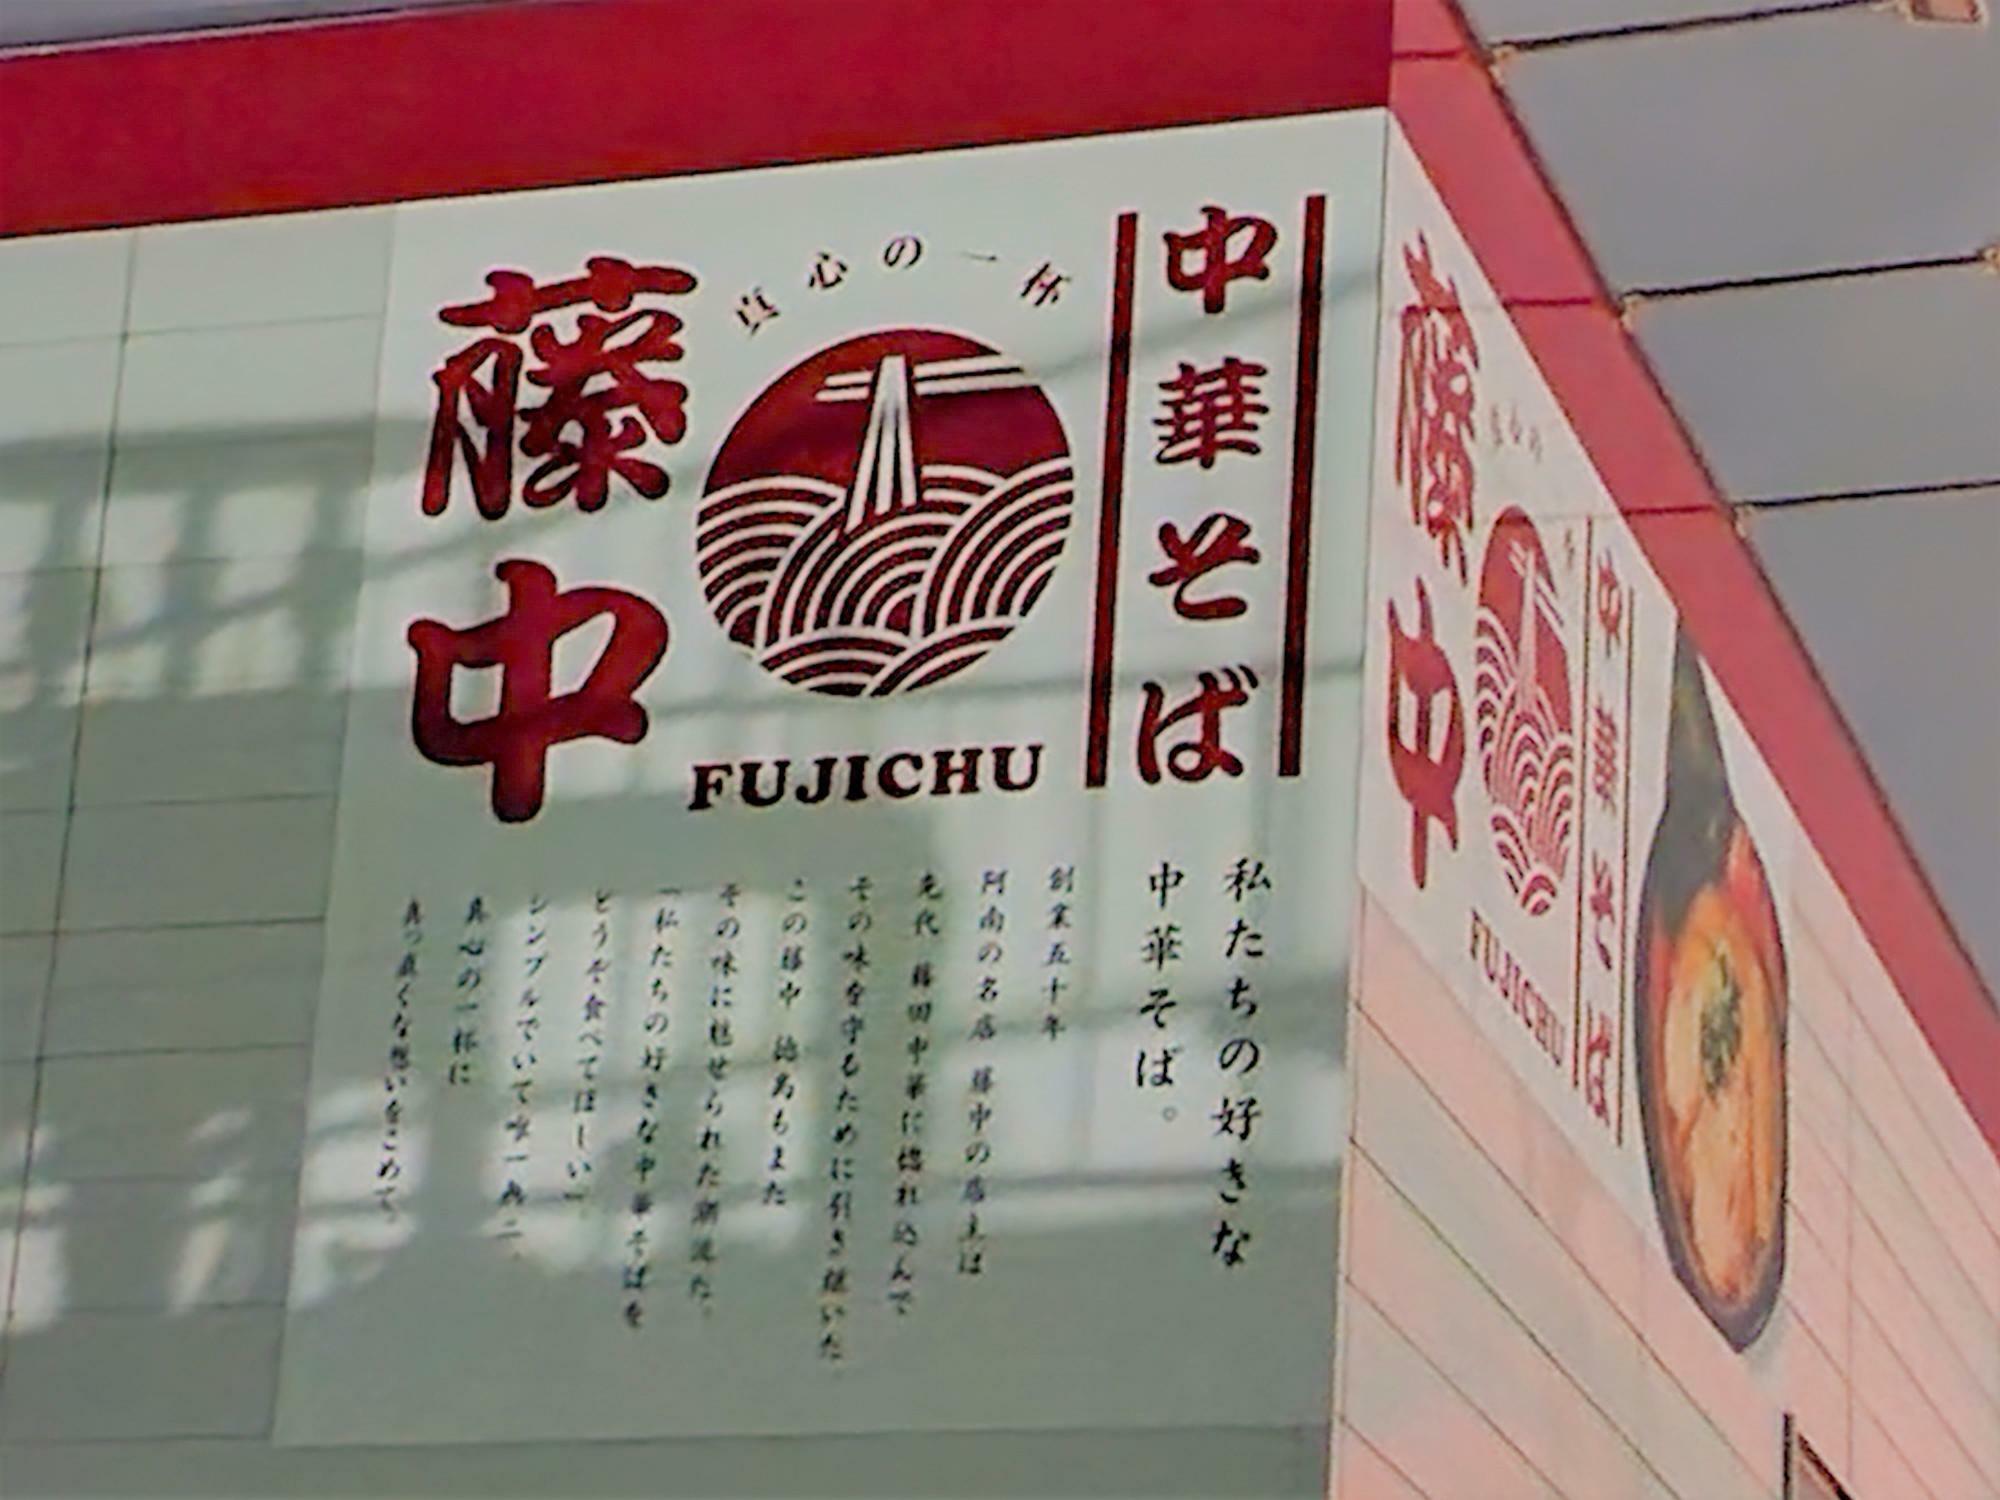 「藤中 徳島本店」の店舗外観には、看板と同じ文言が記載されている。